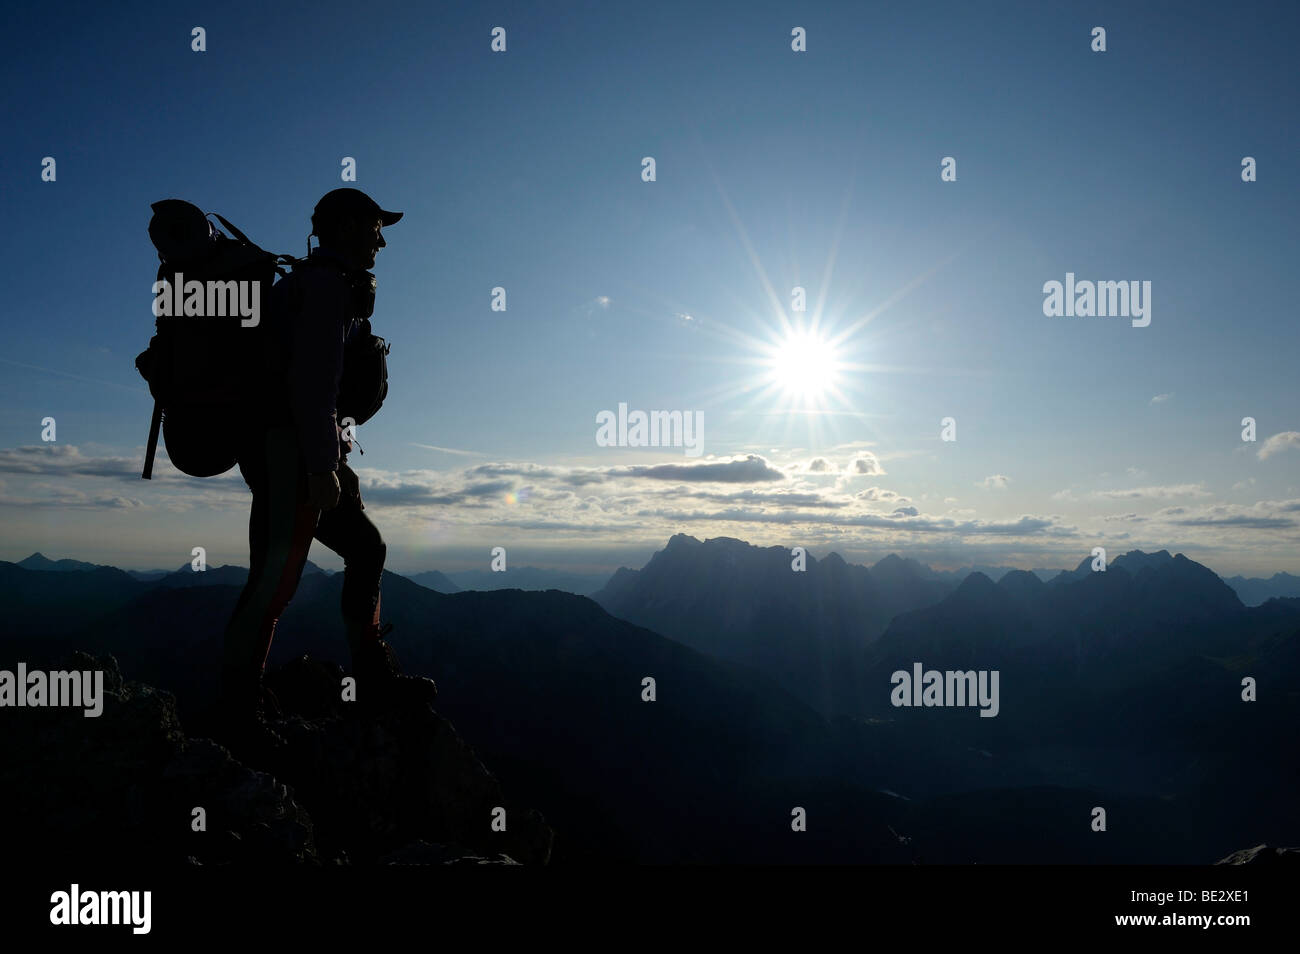 En face d'alpiniste des sommets alpins au lever du soleil, Berwang, Tyrol, Autriche, Europe, Ausserfern Banque D'Images